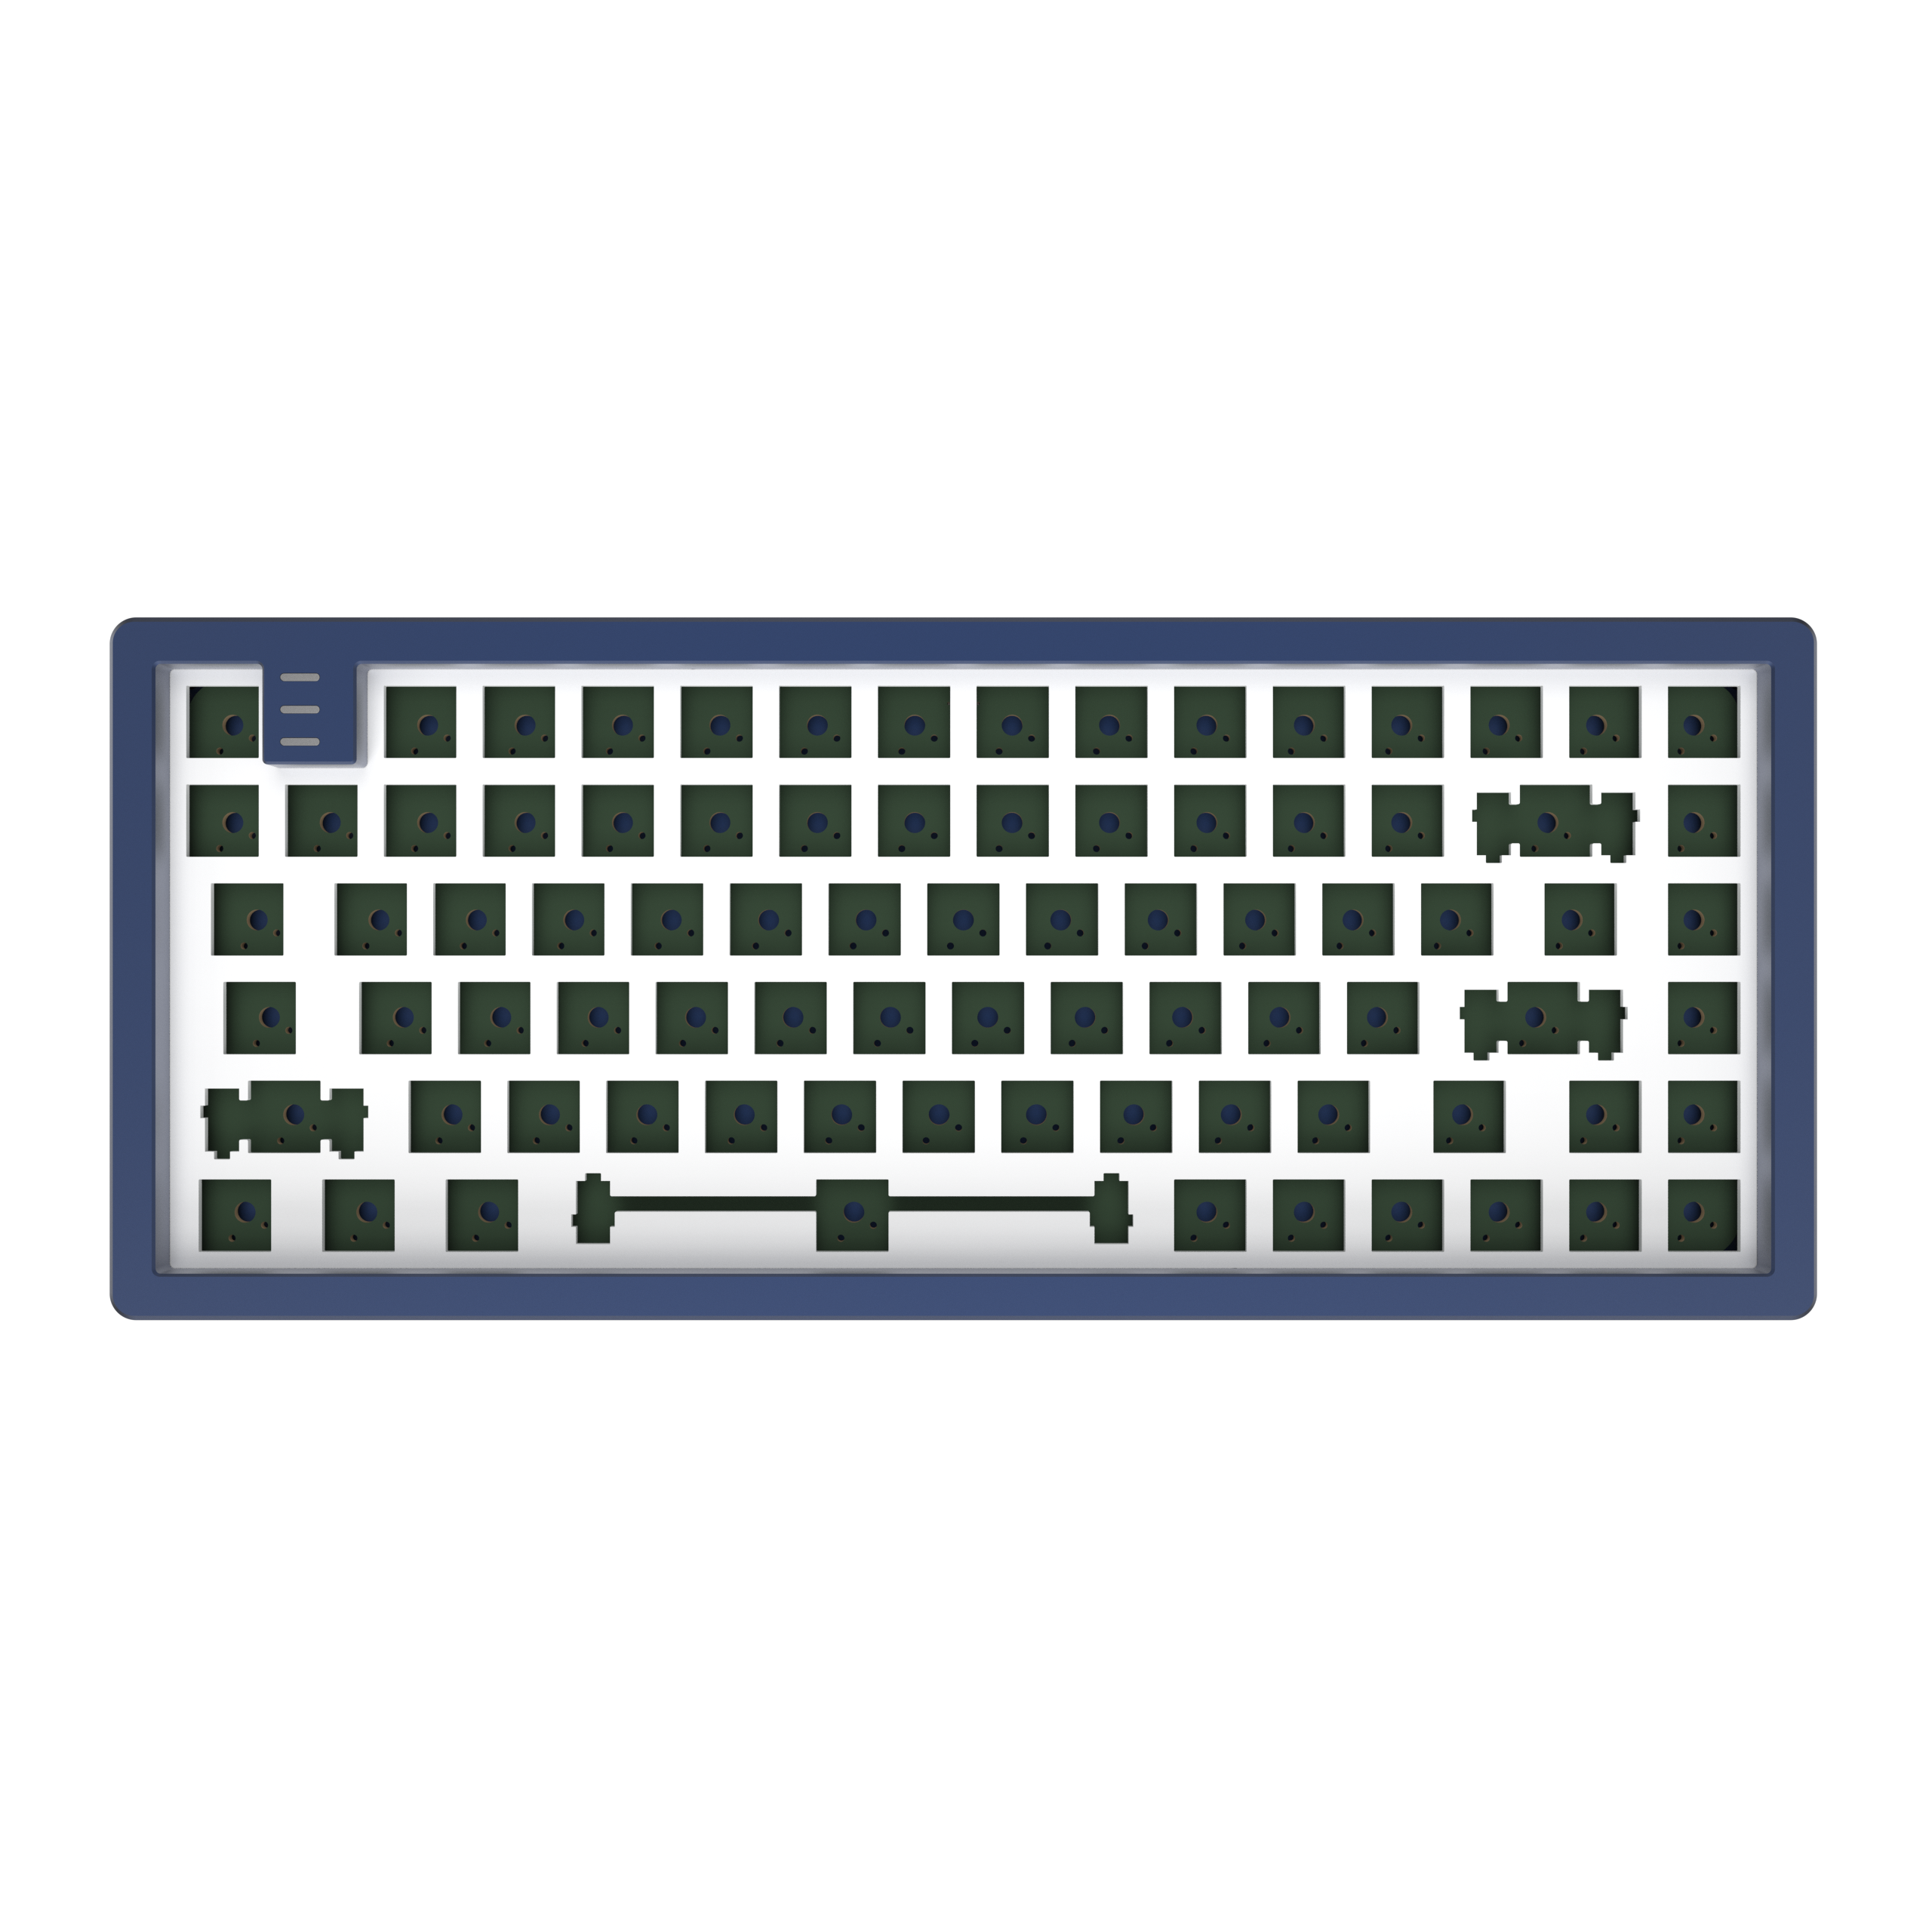 Navy PROJECT Mechanisch LTD - DARK Gaming Tastatur, KD83A Blue Barebones, Aluminium